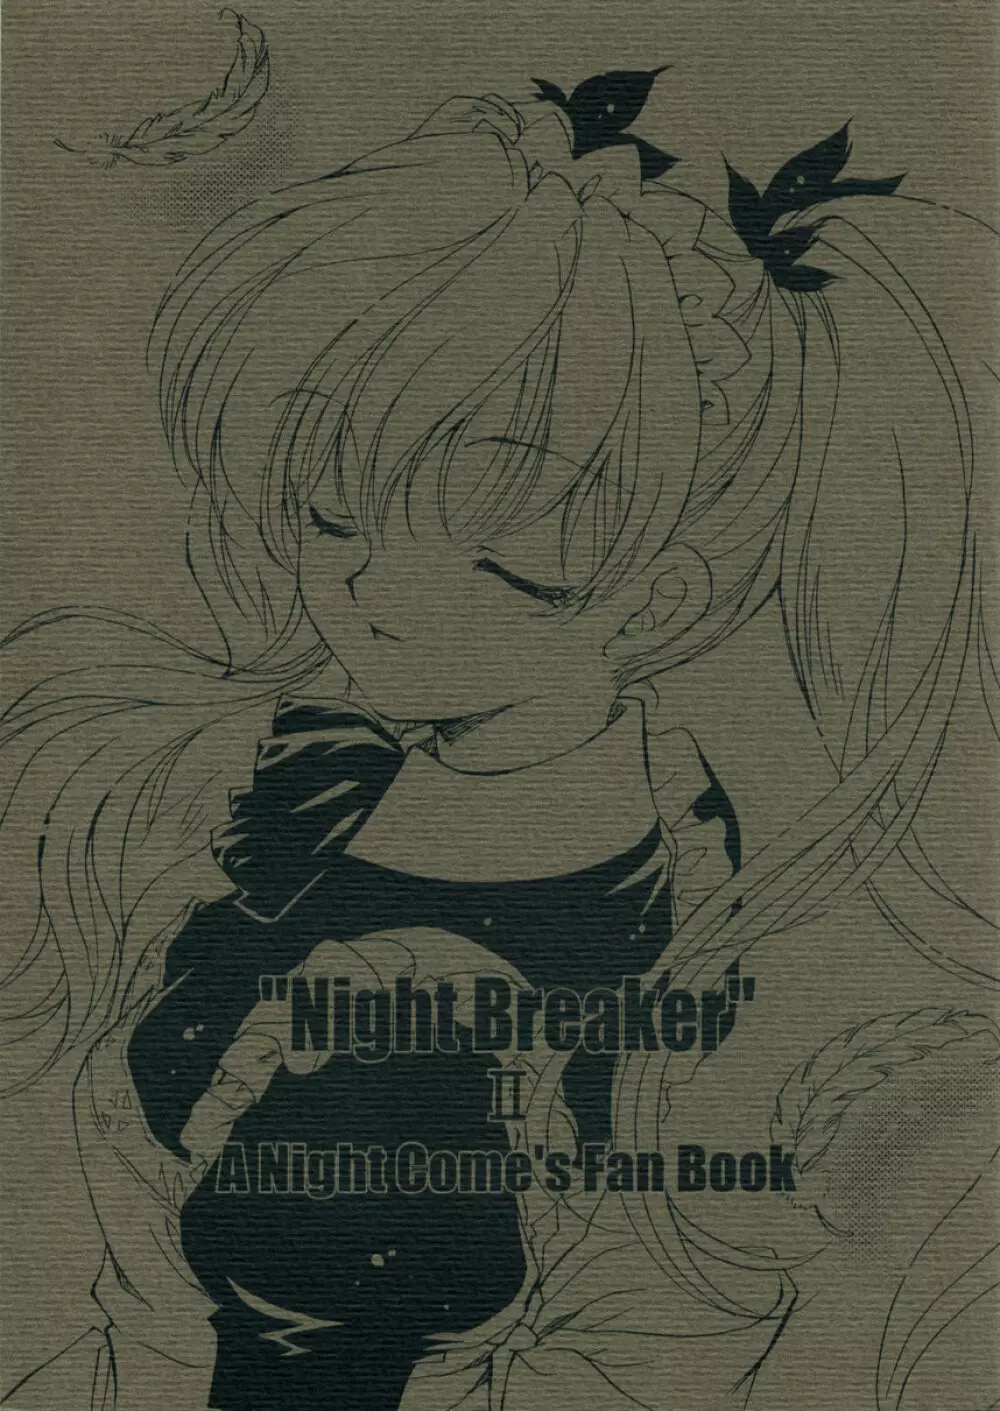 “Night Breaker” II